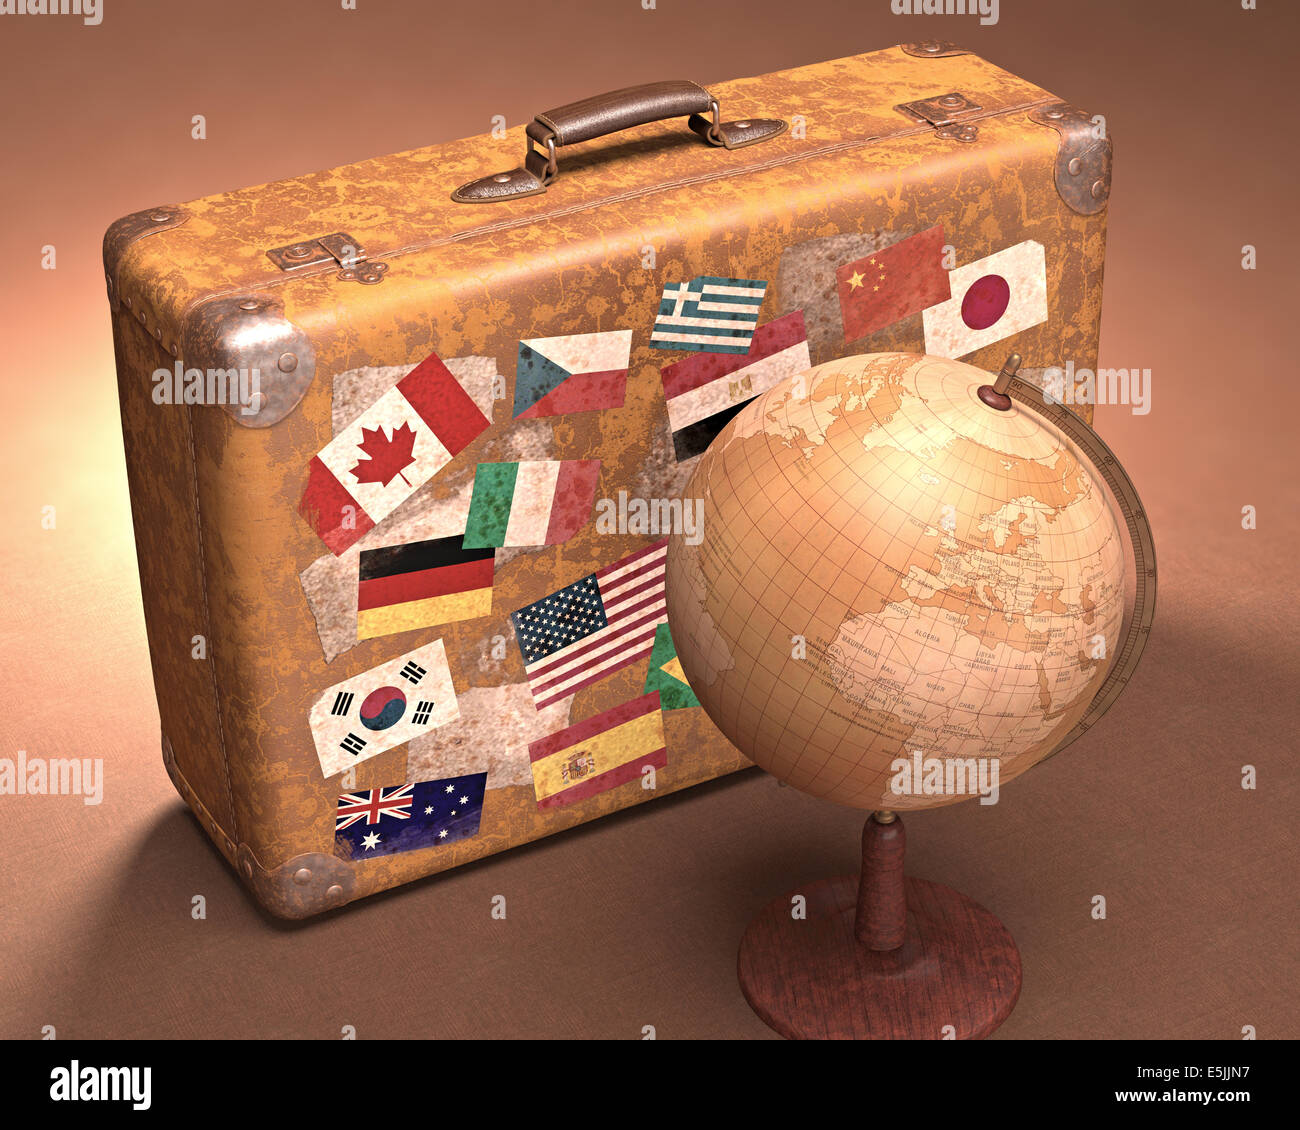 Antique globe en frente de una maleta retro. Concepto de viaje alrededor del mundo. Foto de stock